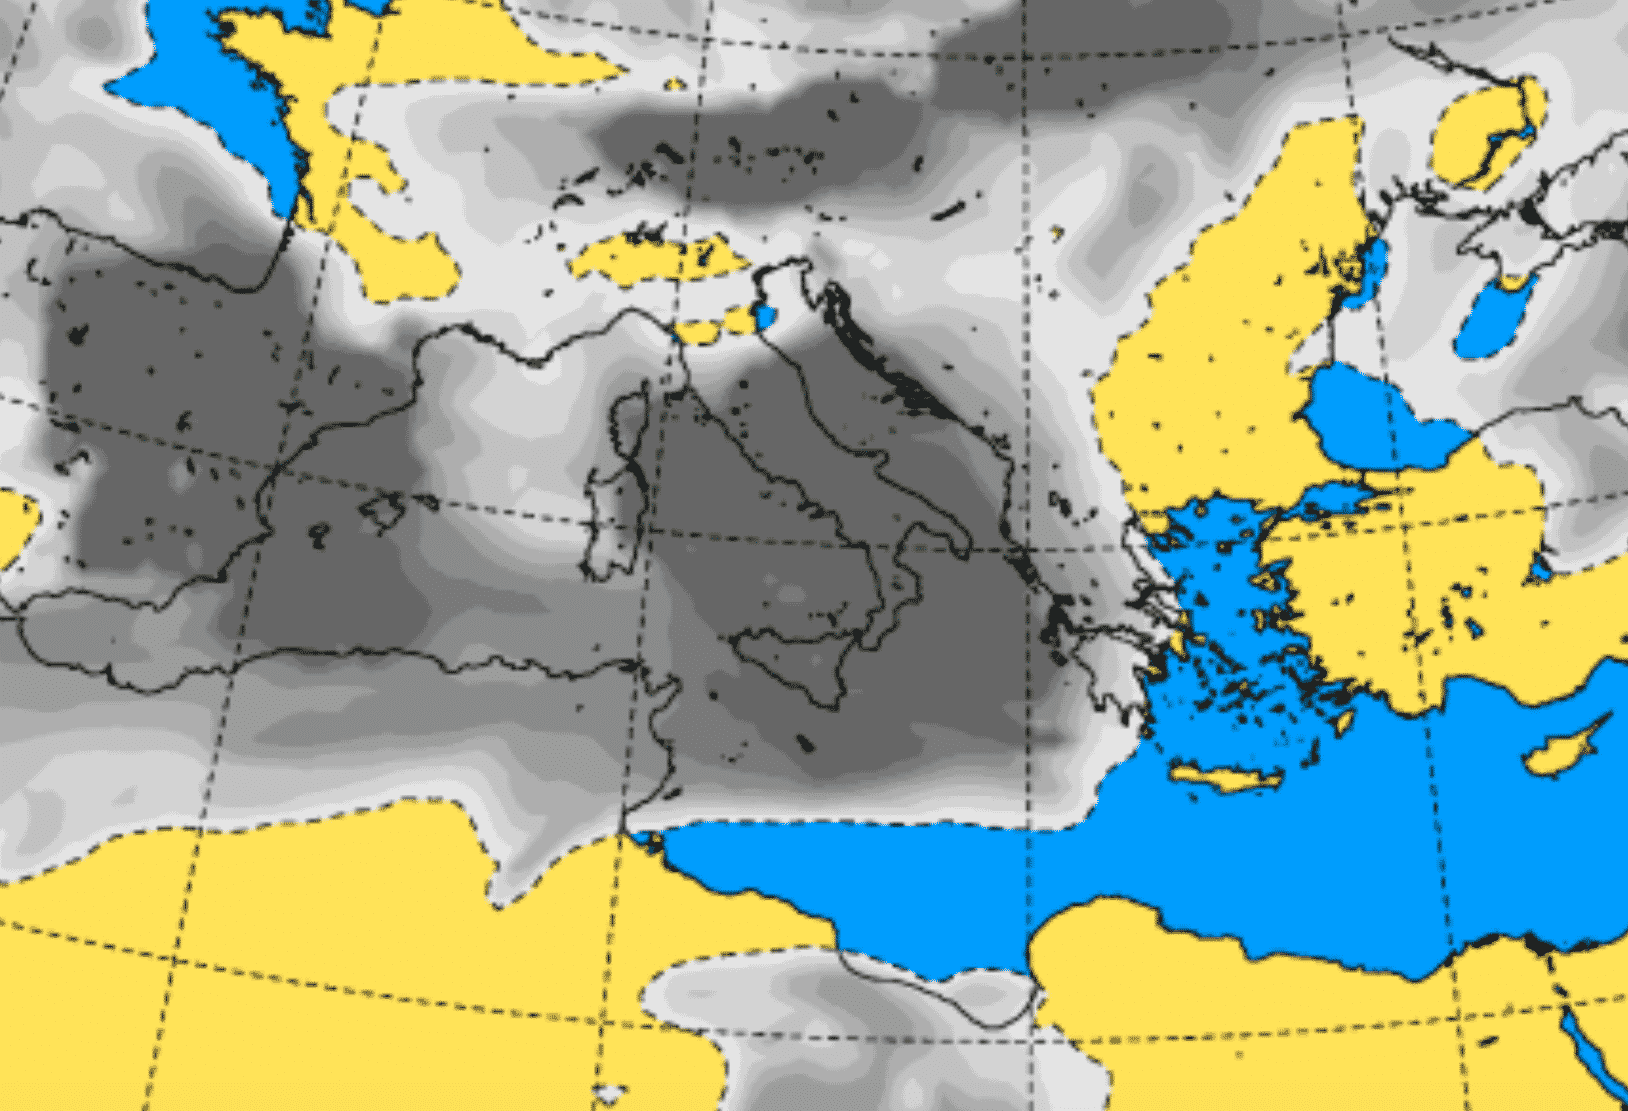 Meteo Sicilia domani, instabilità con temporali, venti forti e mari mossi: previste temperature fino a 19°C